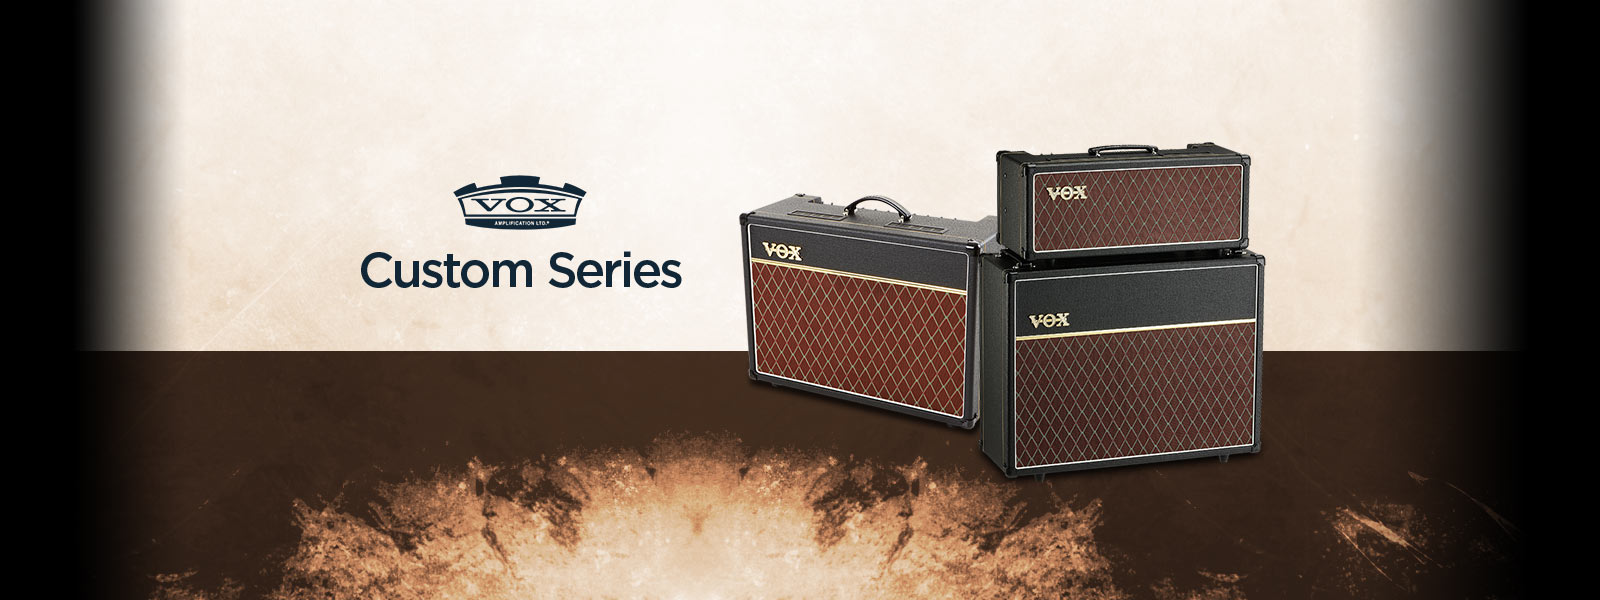 VOX Custom Series  Amplifiers